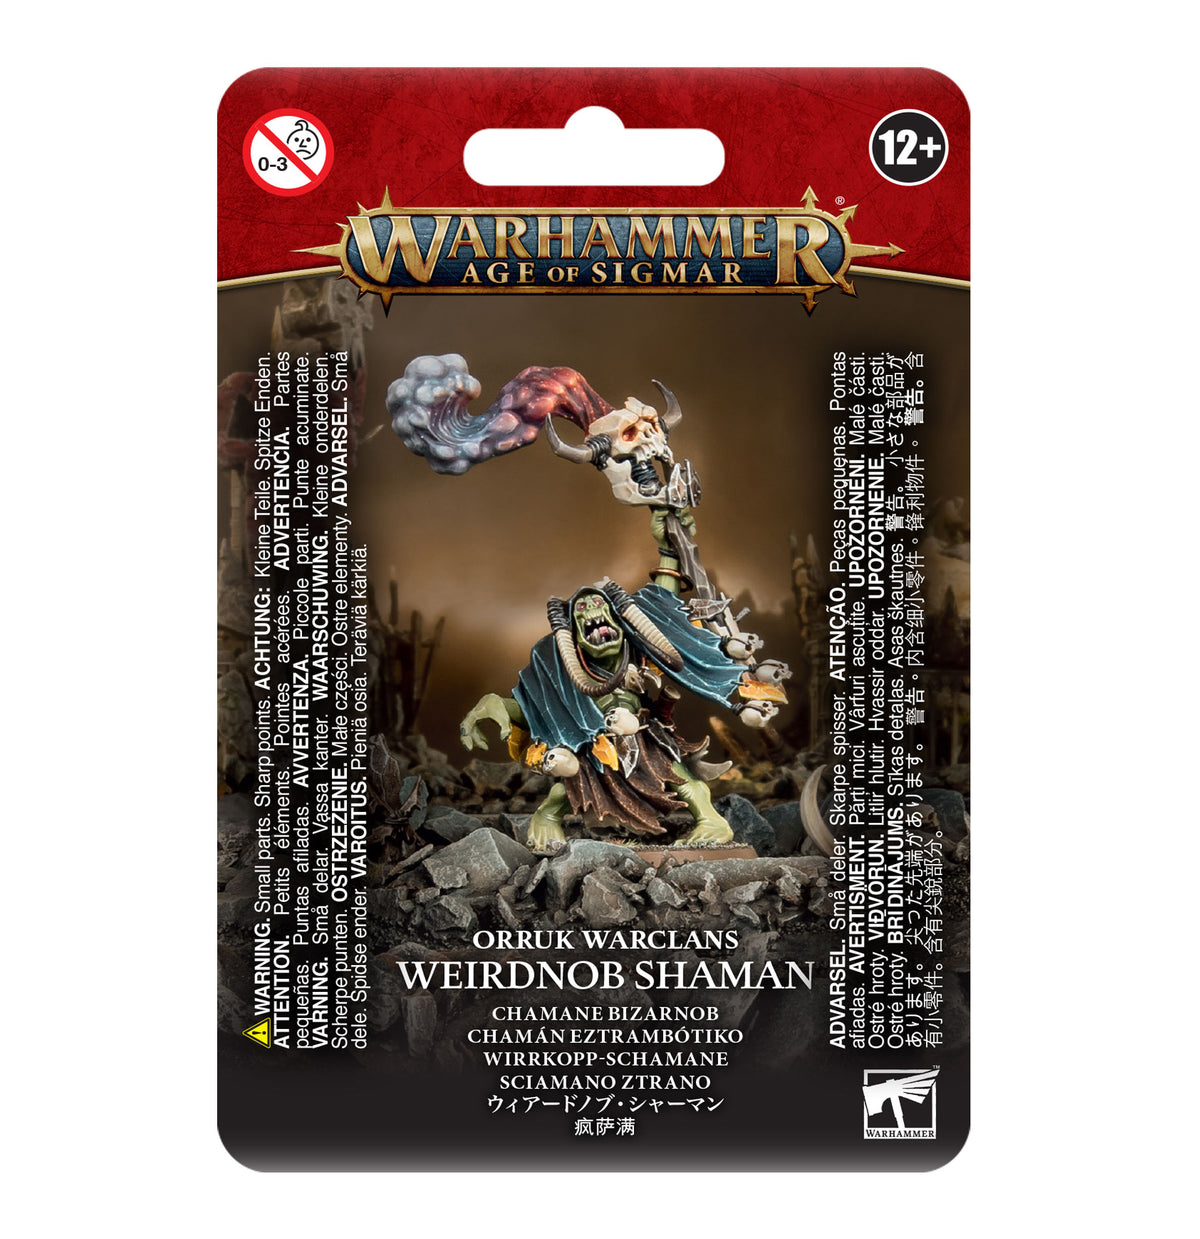 Orruk Warclans - Weirdnob Shaman (Warhammer Age of Sigmar)